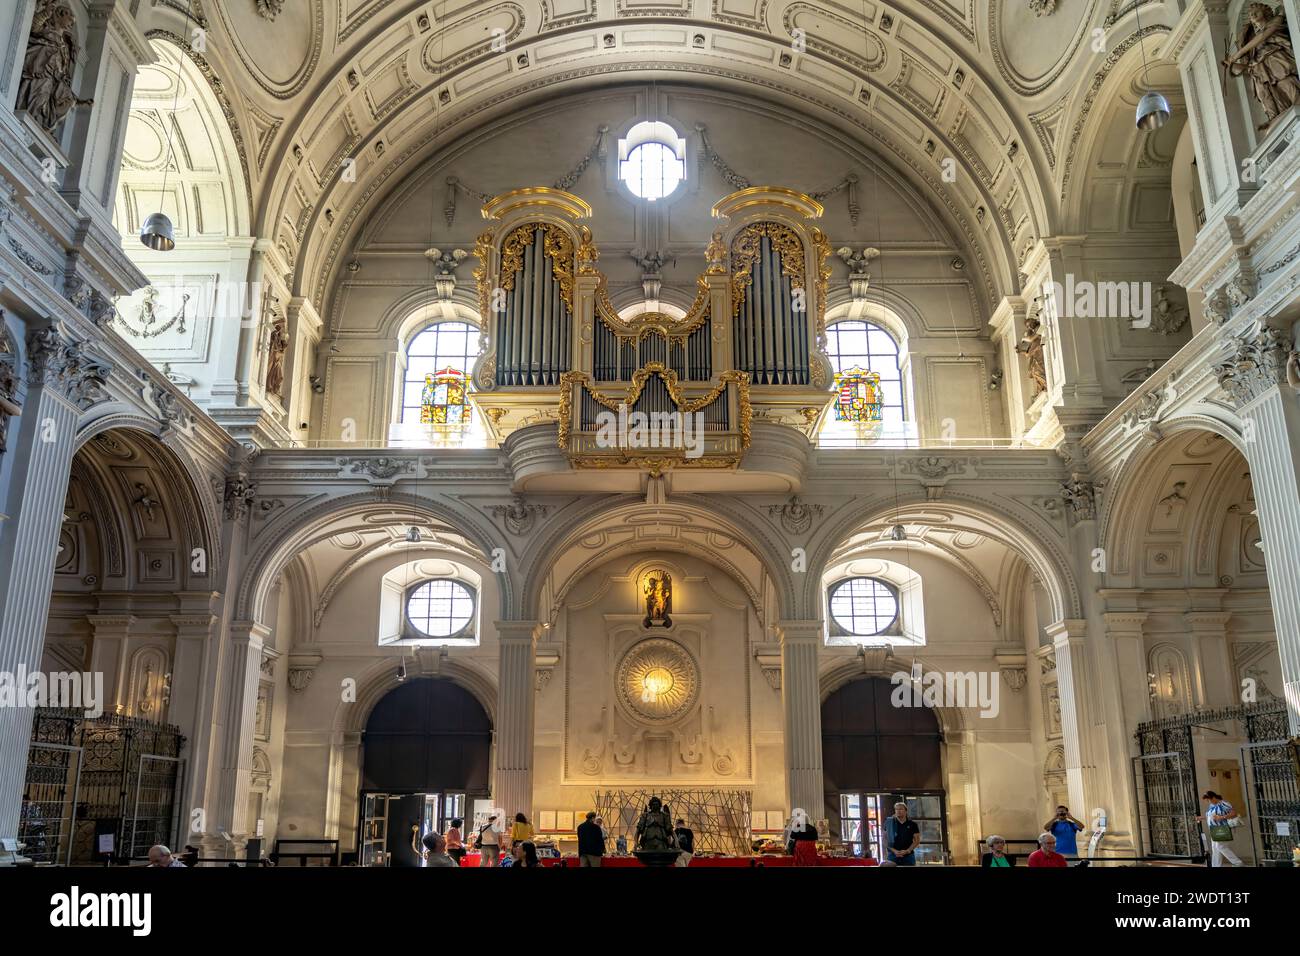 Orgel im Innenraum der Jesuitenkirche St. Michael, München, Bayern, Deutschland, Europa | Orgel der St. Michaels Jesuitenkirche in Munic Stockfoto